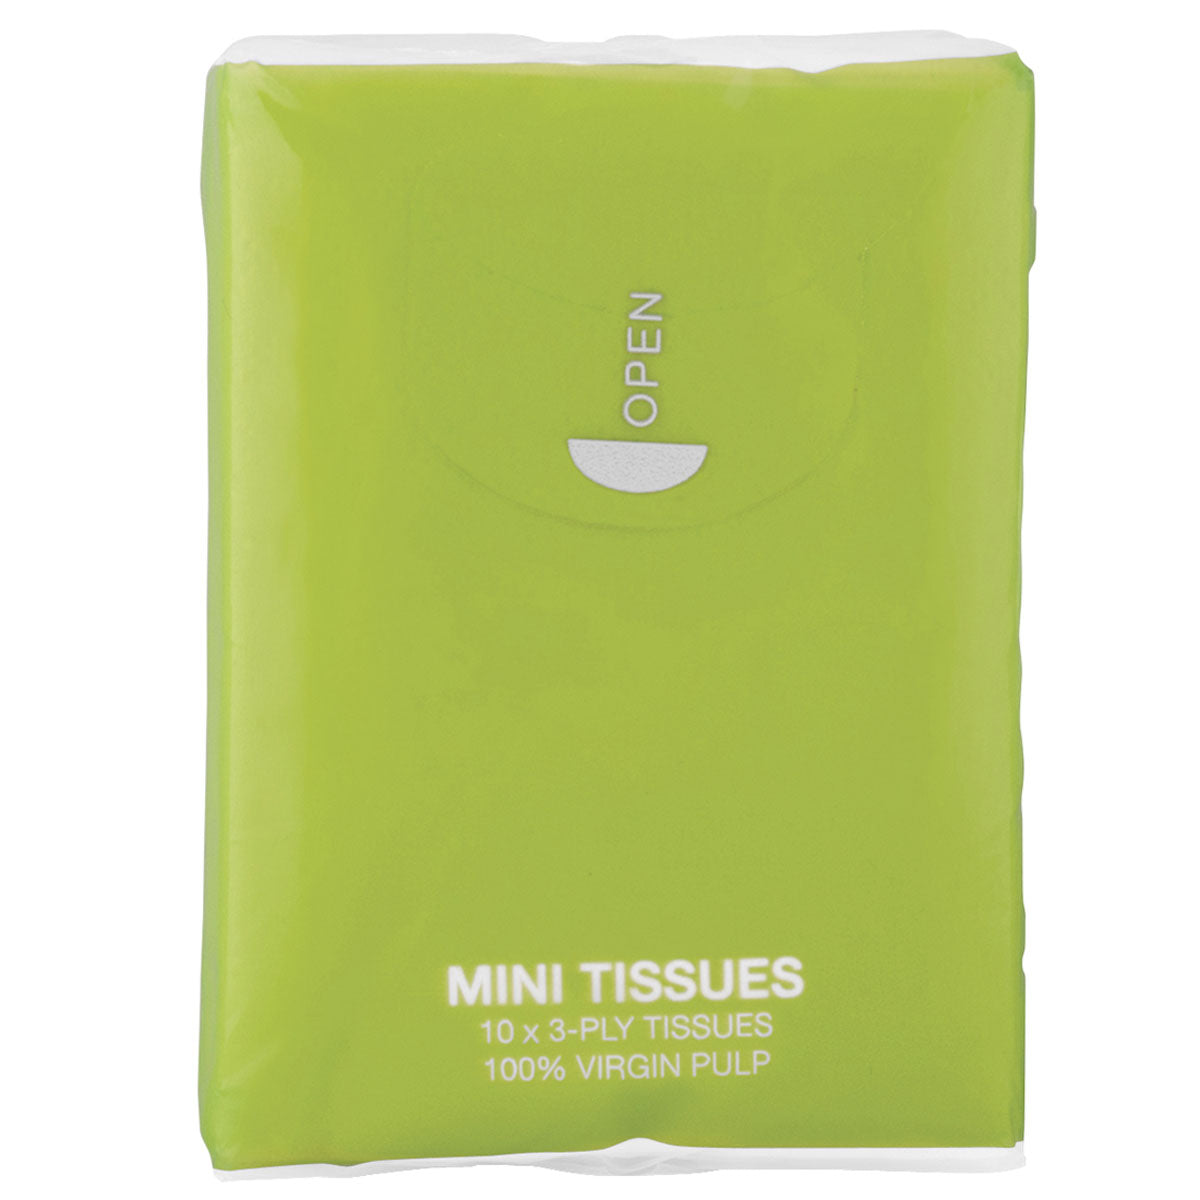 Mini Tissue Pack  Prime Line Promos